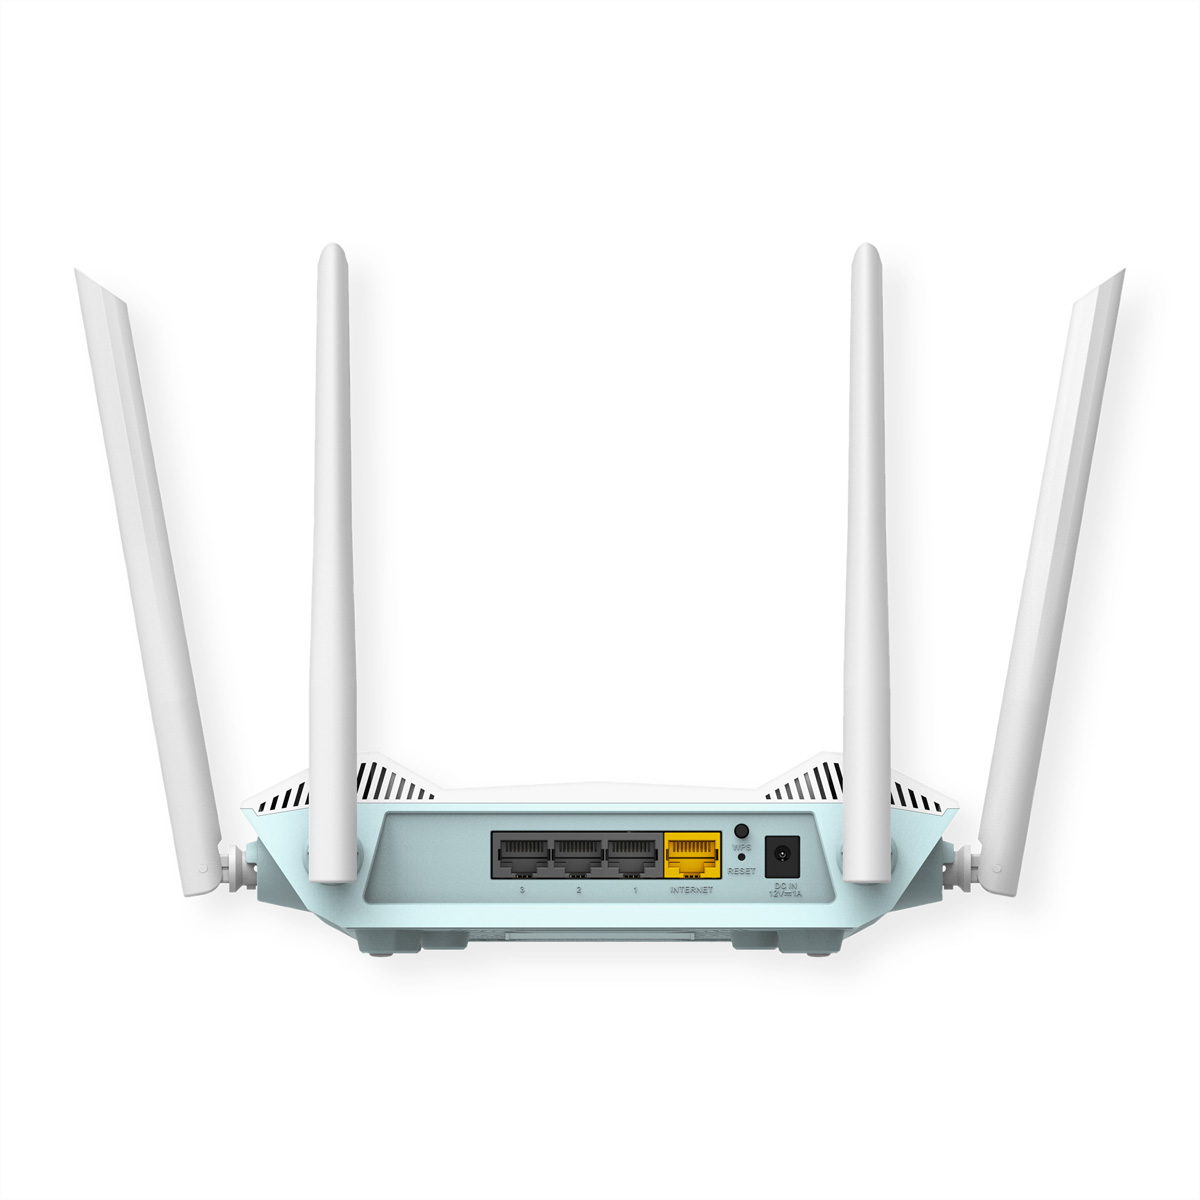 AX1500 Smart D-LINK R15 EAGLE Point Gbit/s 1,5 AI Access Router PRO